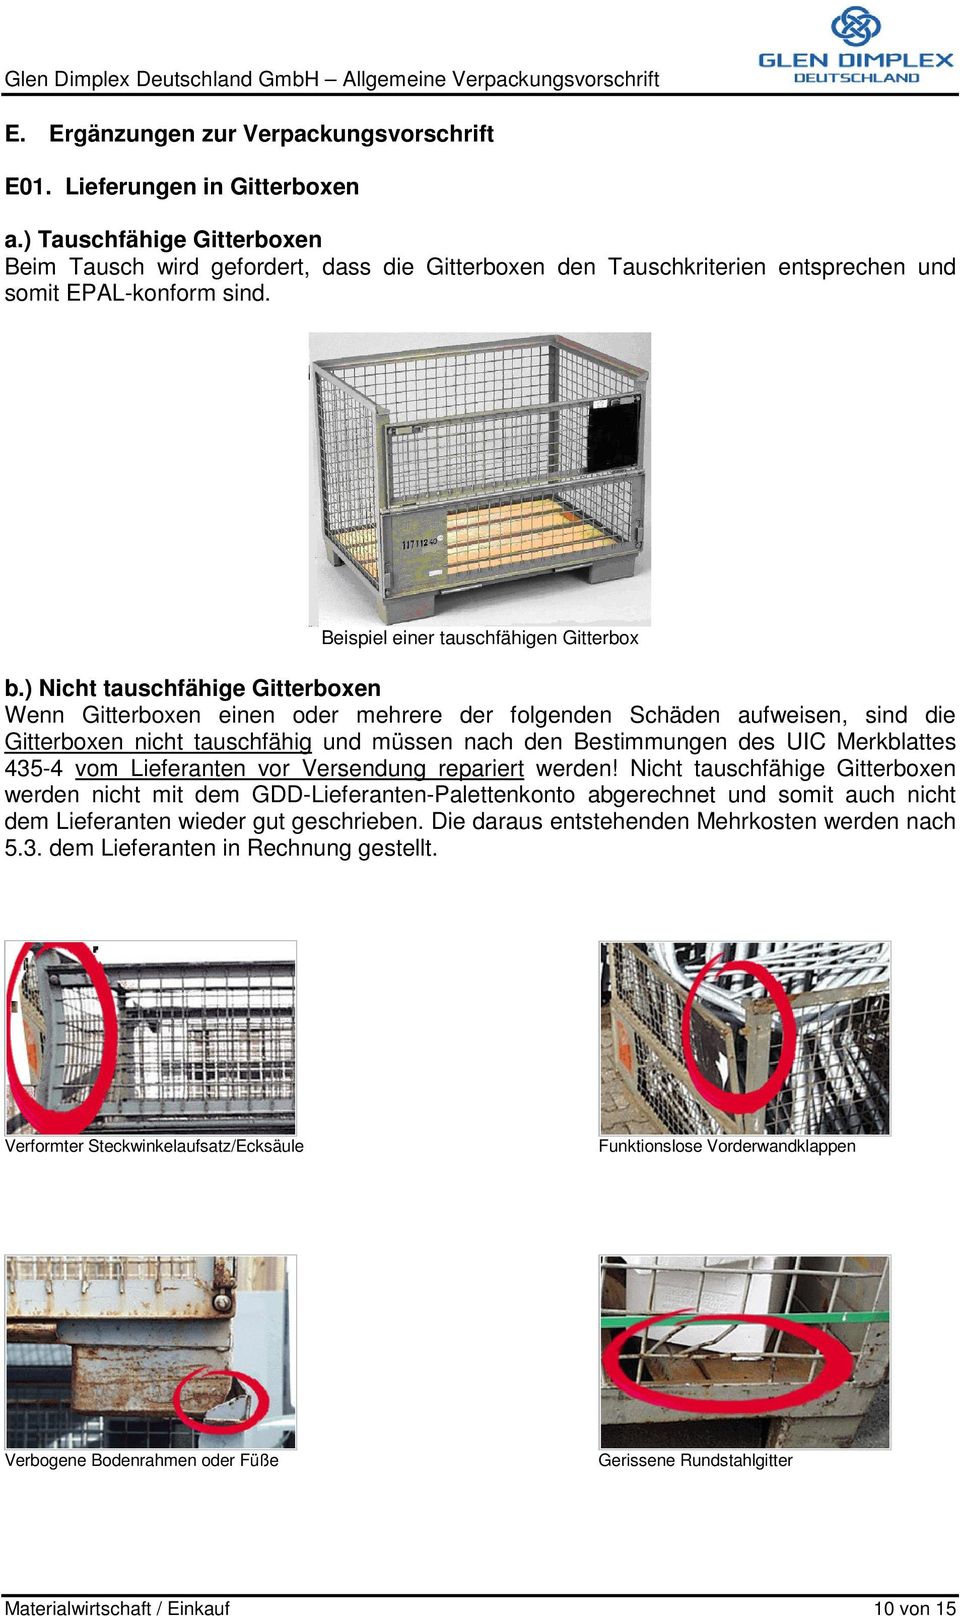 ) Nicht tauschfähige Gitterboxen Wenn Gitterboxen einen oder mehrere der folgenden Schäden aufweisen, sind die Gitterboxen nicht tauschfähig und müssen nach den Bestimmungen des UIC Merkblattes 435-4